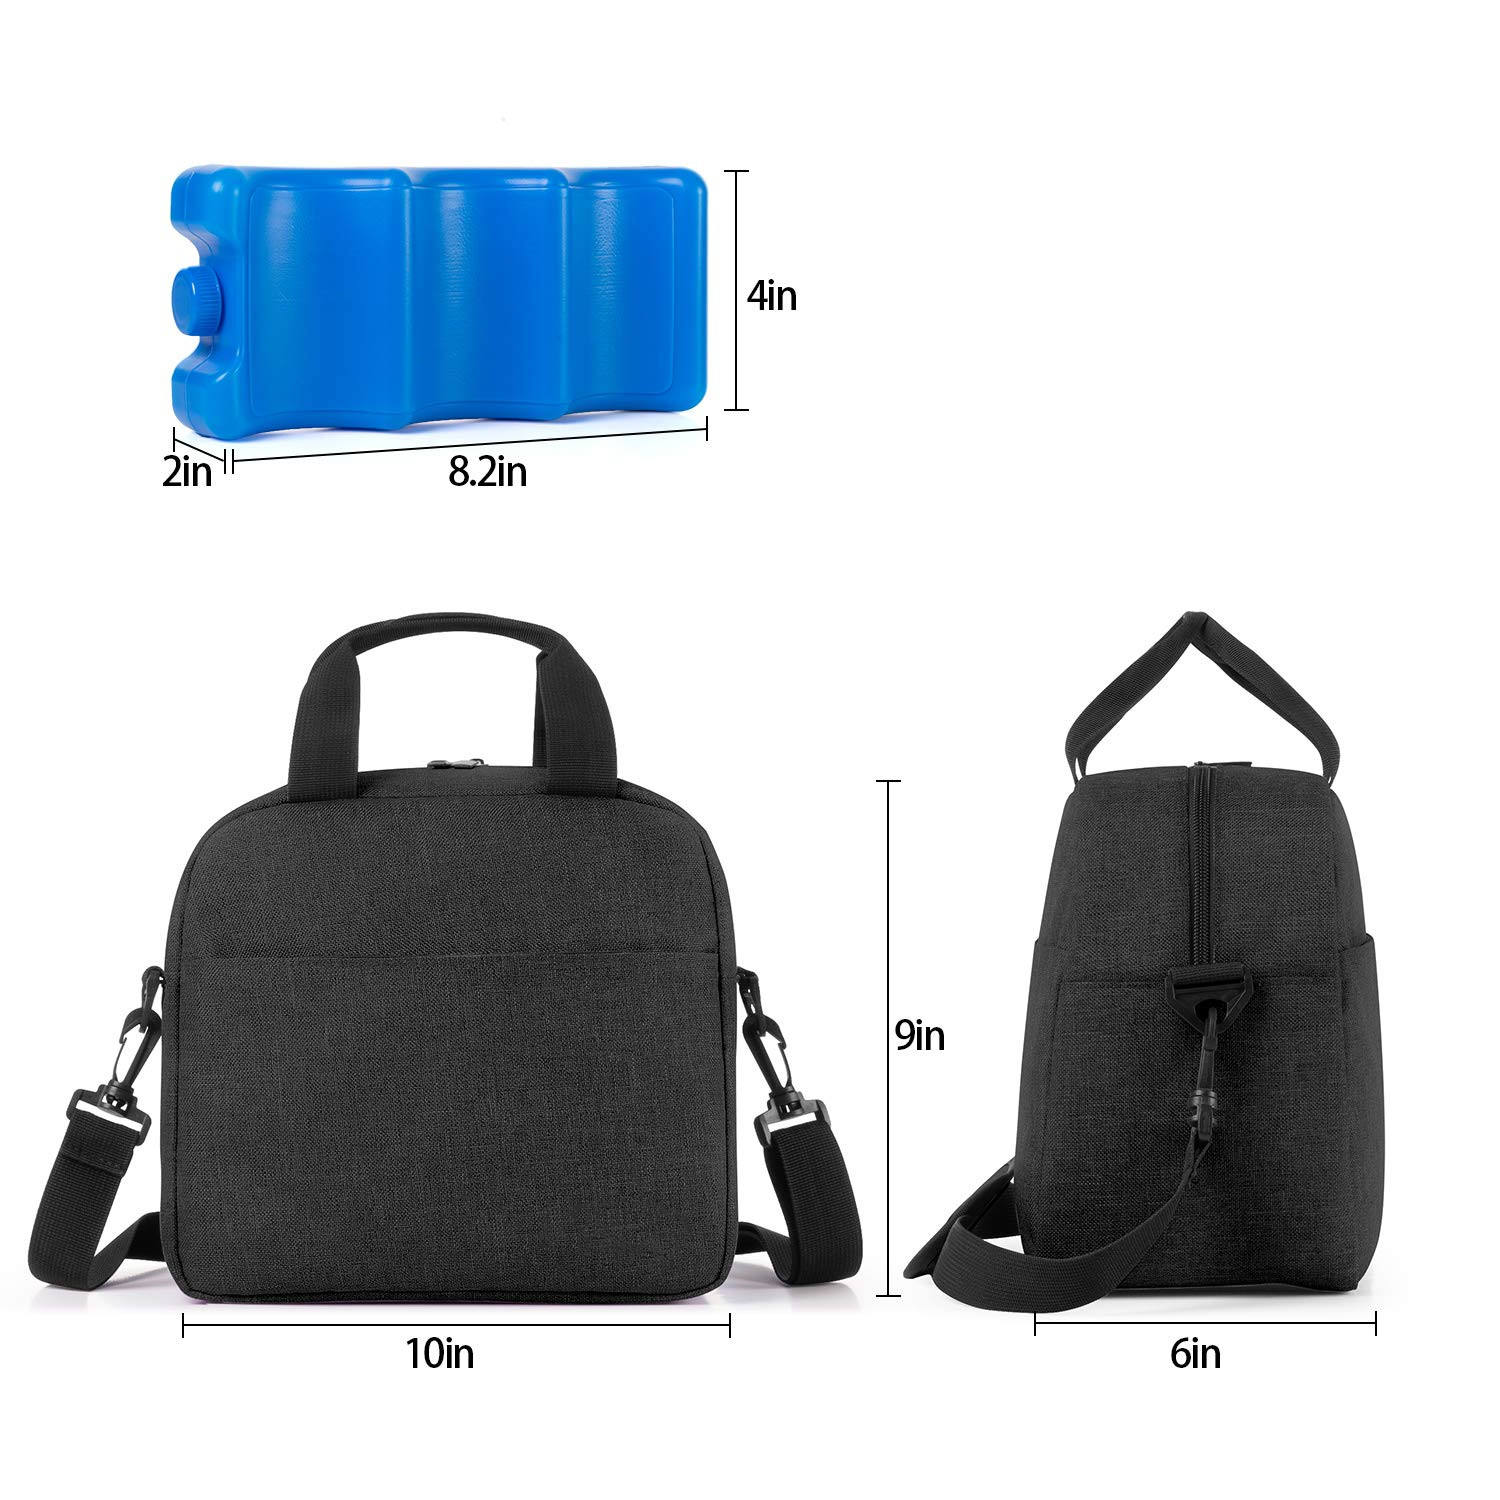 Black custom logo Breastmilk Cooler Bag Travel Baby Bottle Carrier Tote Bag Fits Up to 6 Large 9 Ounce Bottles